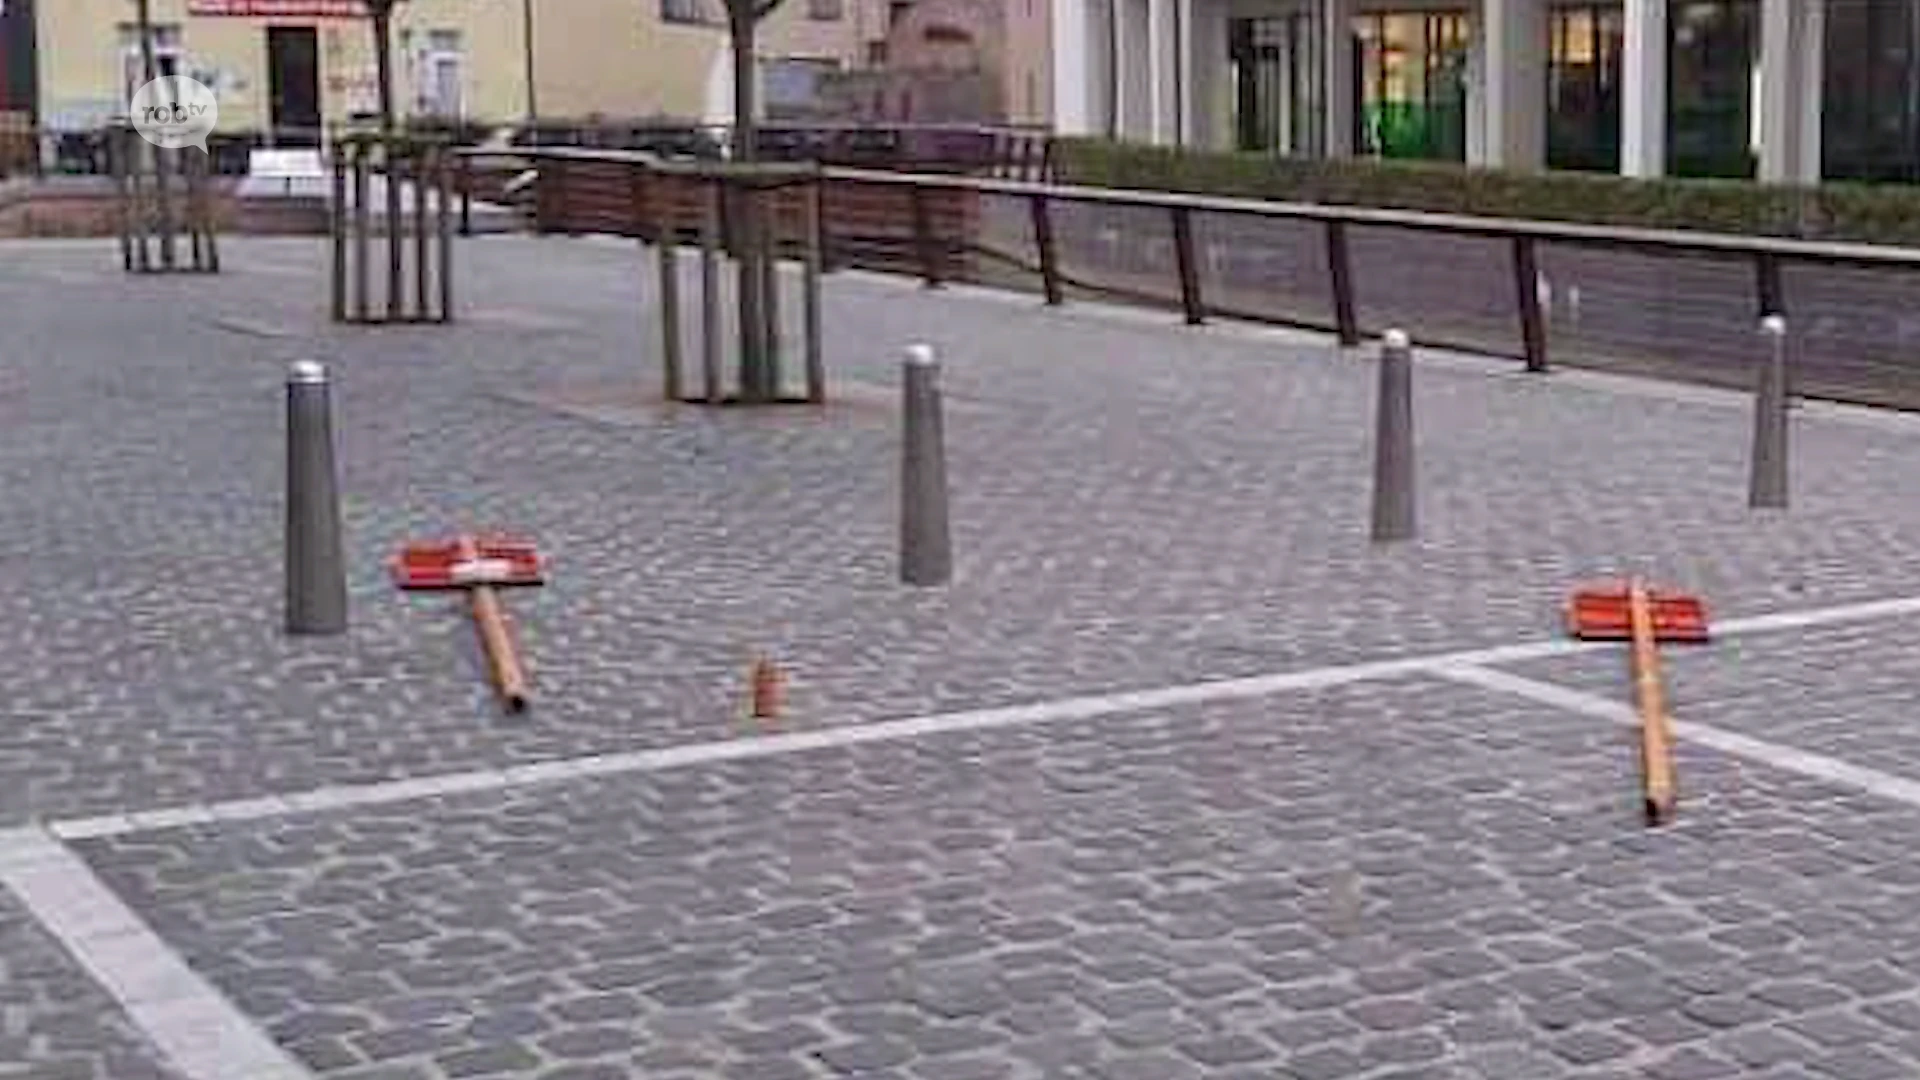 Politie van Diest onderzoekt camerabeelden waarop jongeren verkeersborden voor mindervaliden vernielen